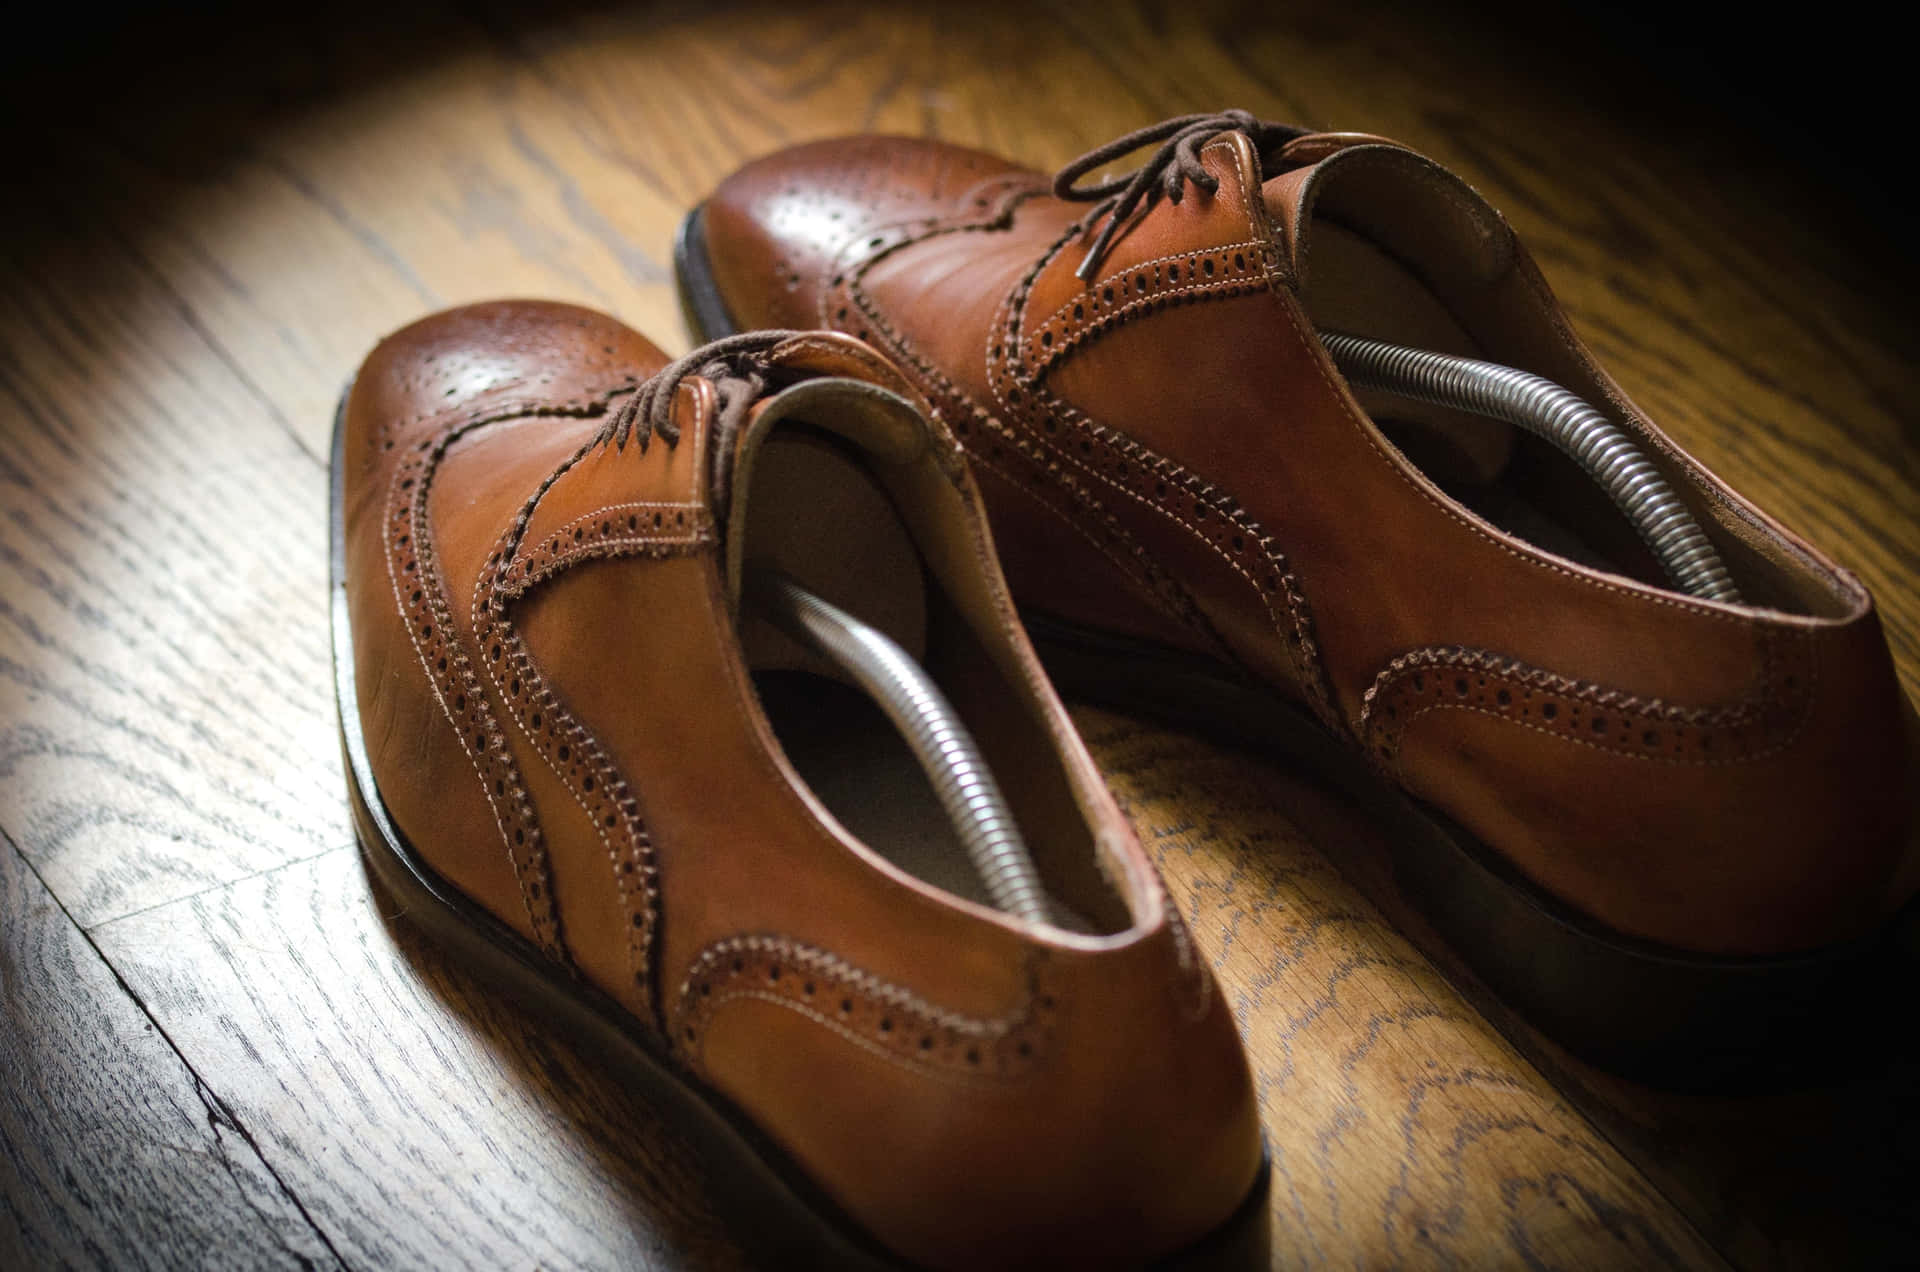 Einpaar Braune Schuhe Auf Einem Holzboden.